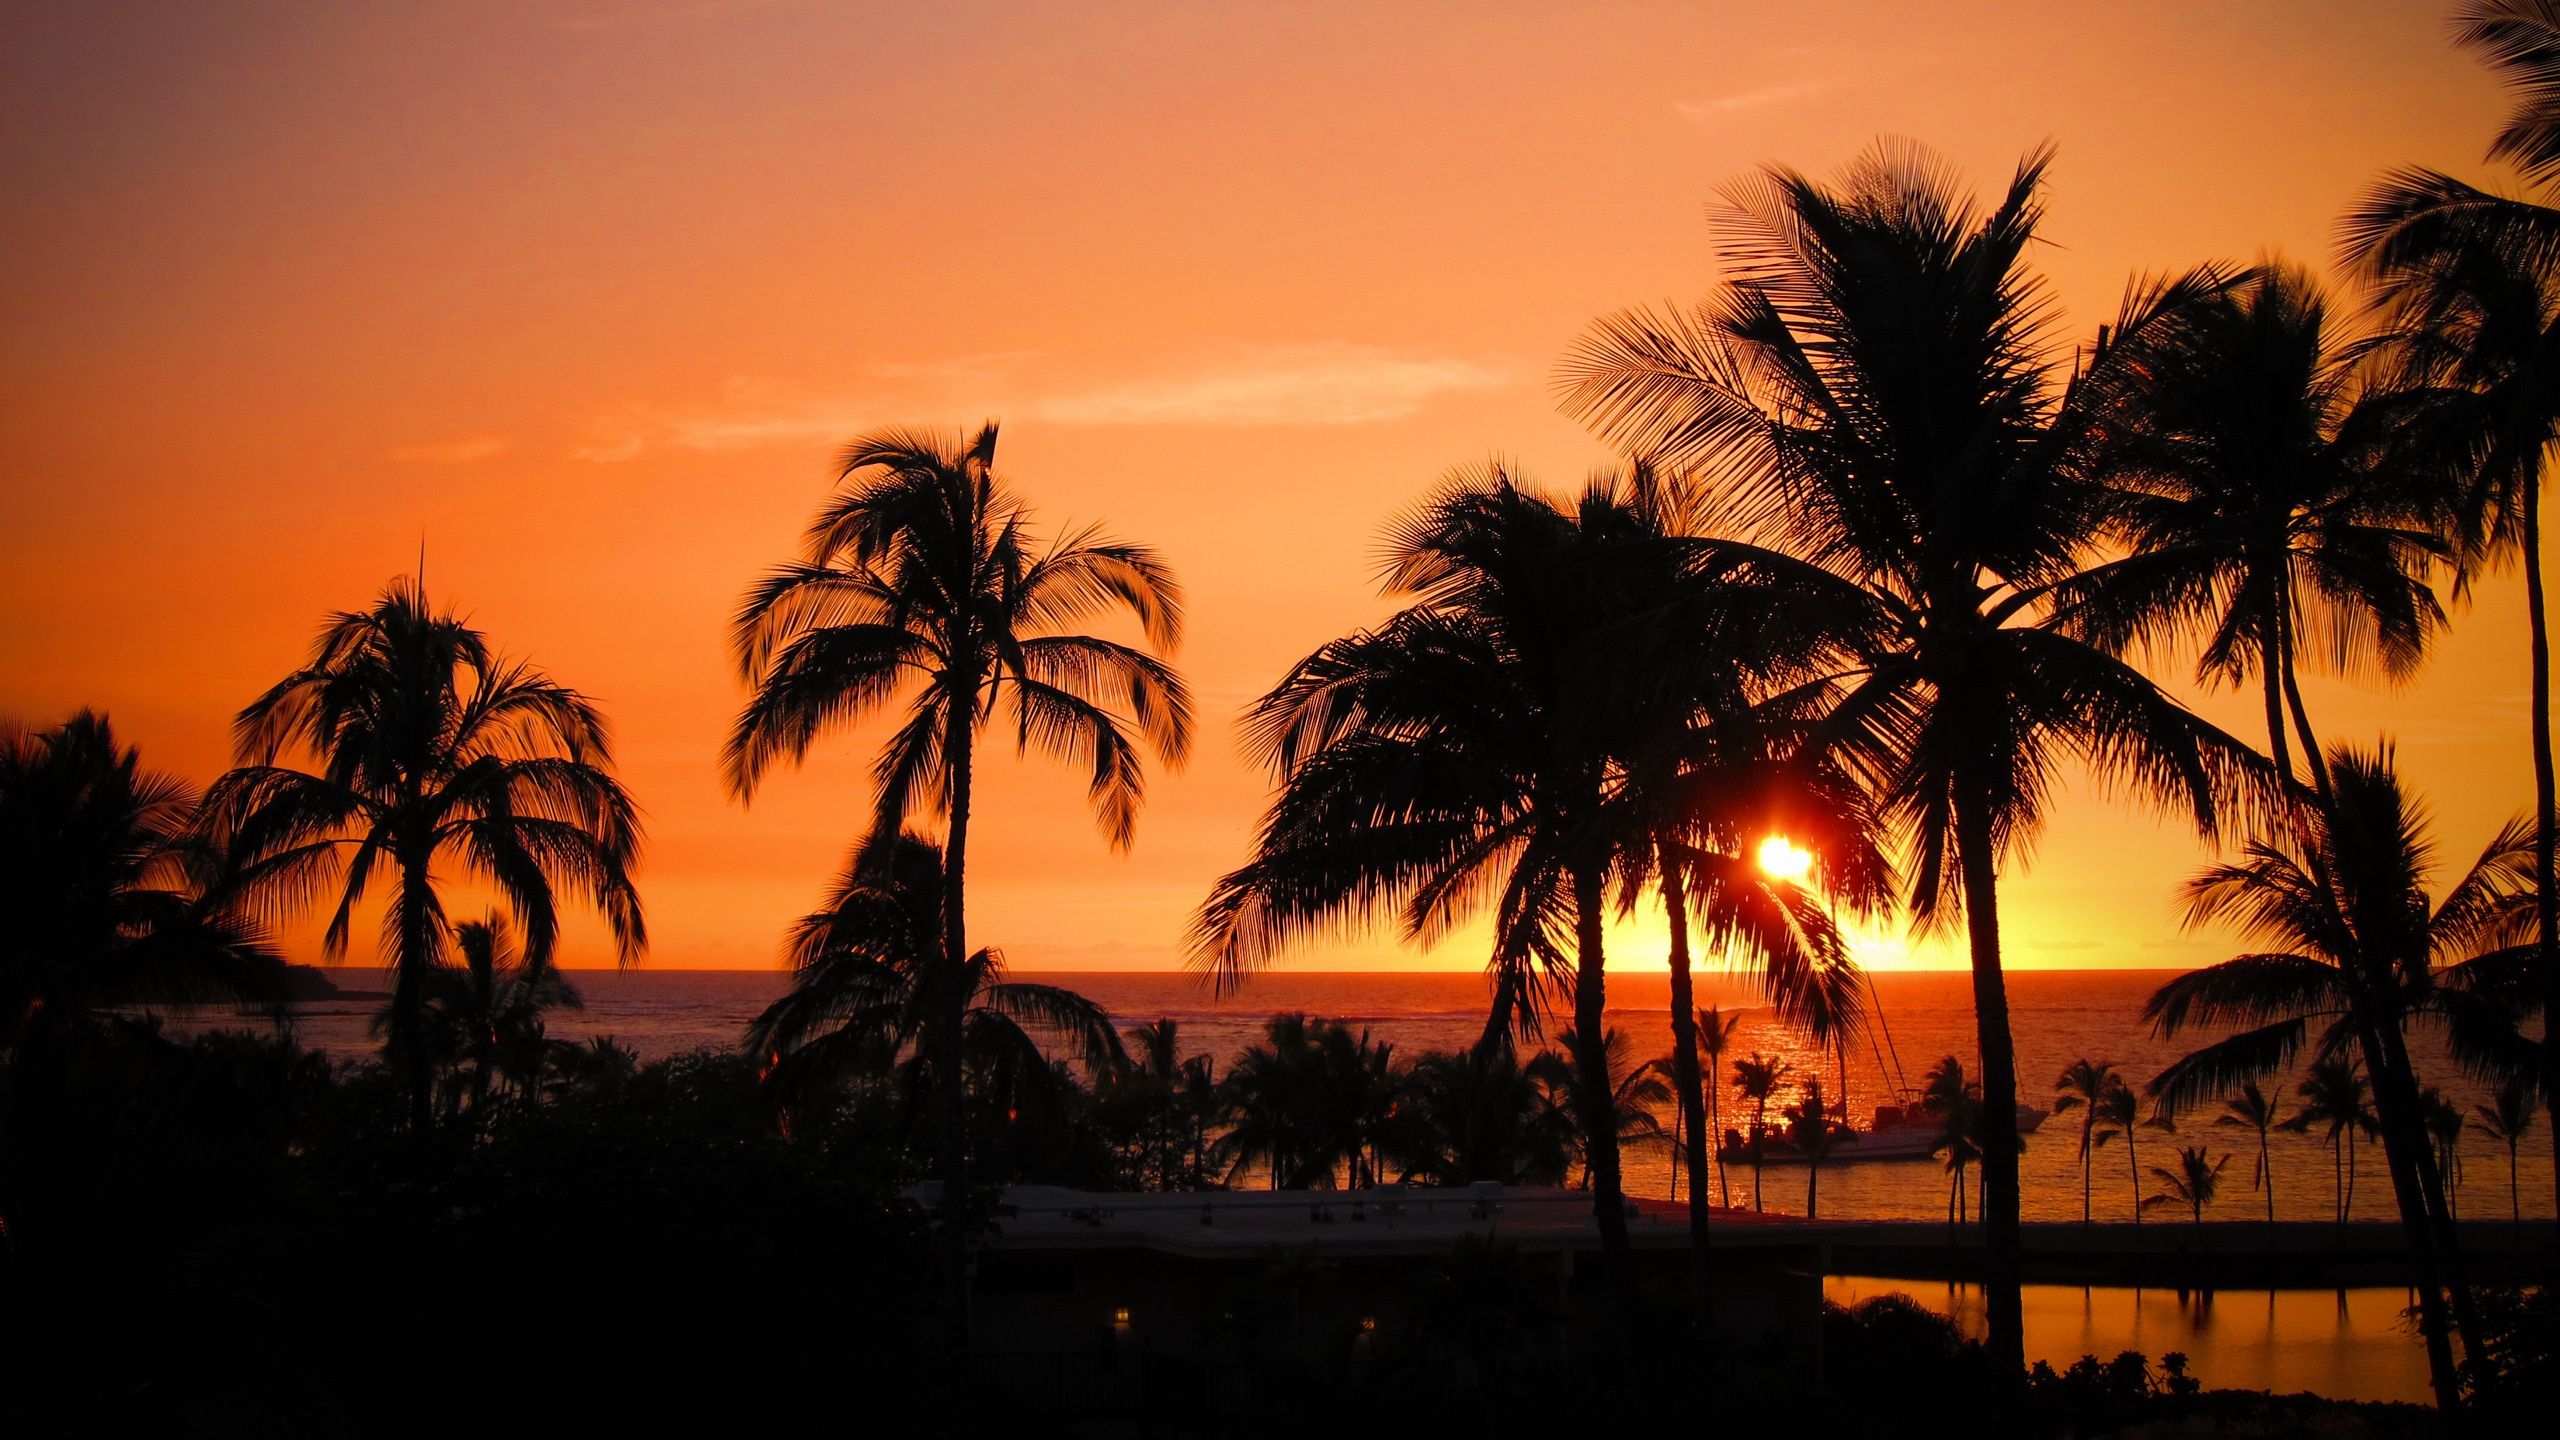 日落, 晚上, 热带地区, 欧胡岛, Arecales 壁纸 2560x1440 允许